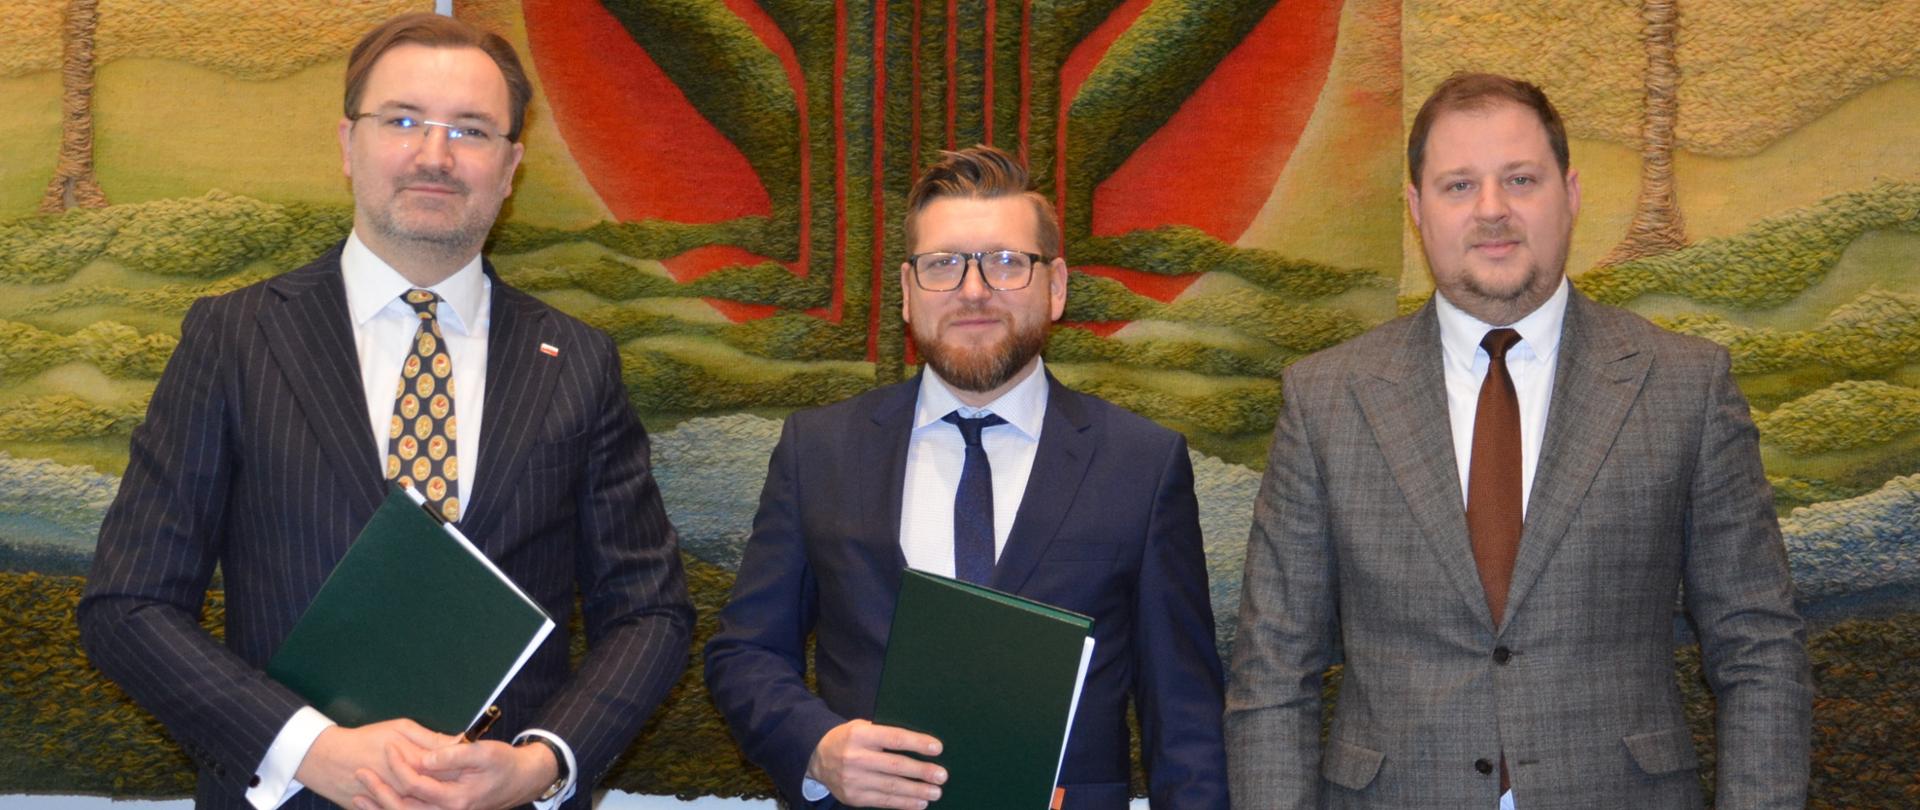 Sławomir Mazurek, zastępca prezesa zarządu NFOŚiGW podczas uroczystego podpisania umowy z PSEW